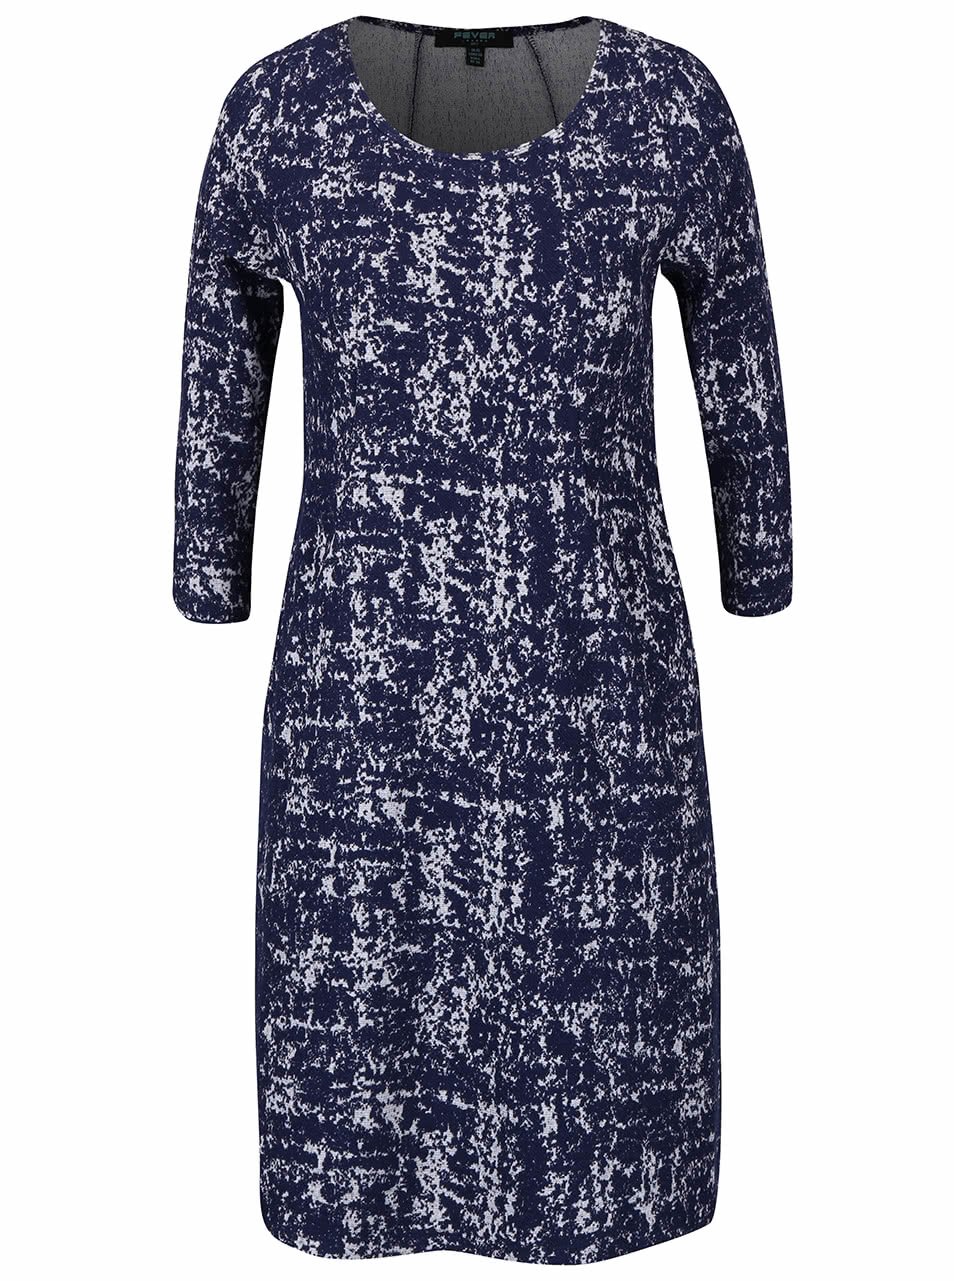 Tmavě modré vzorované strečové šaty s kapsami Fever London Logan